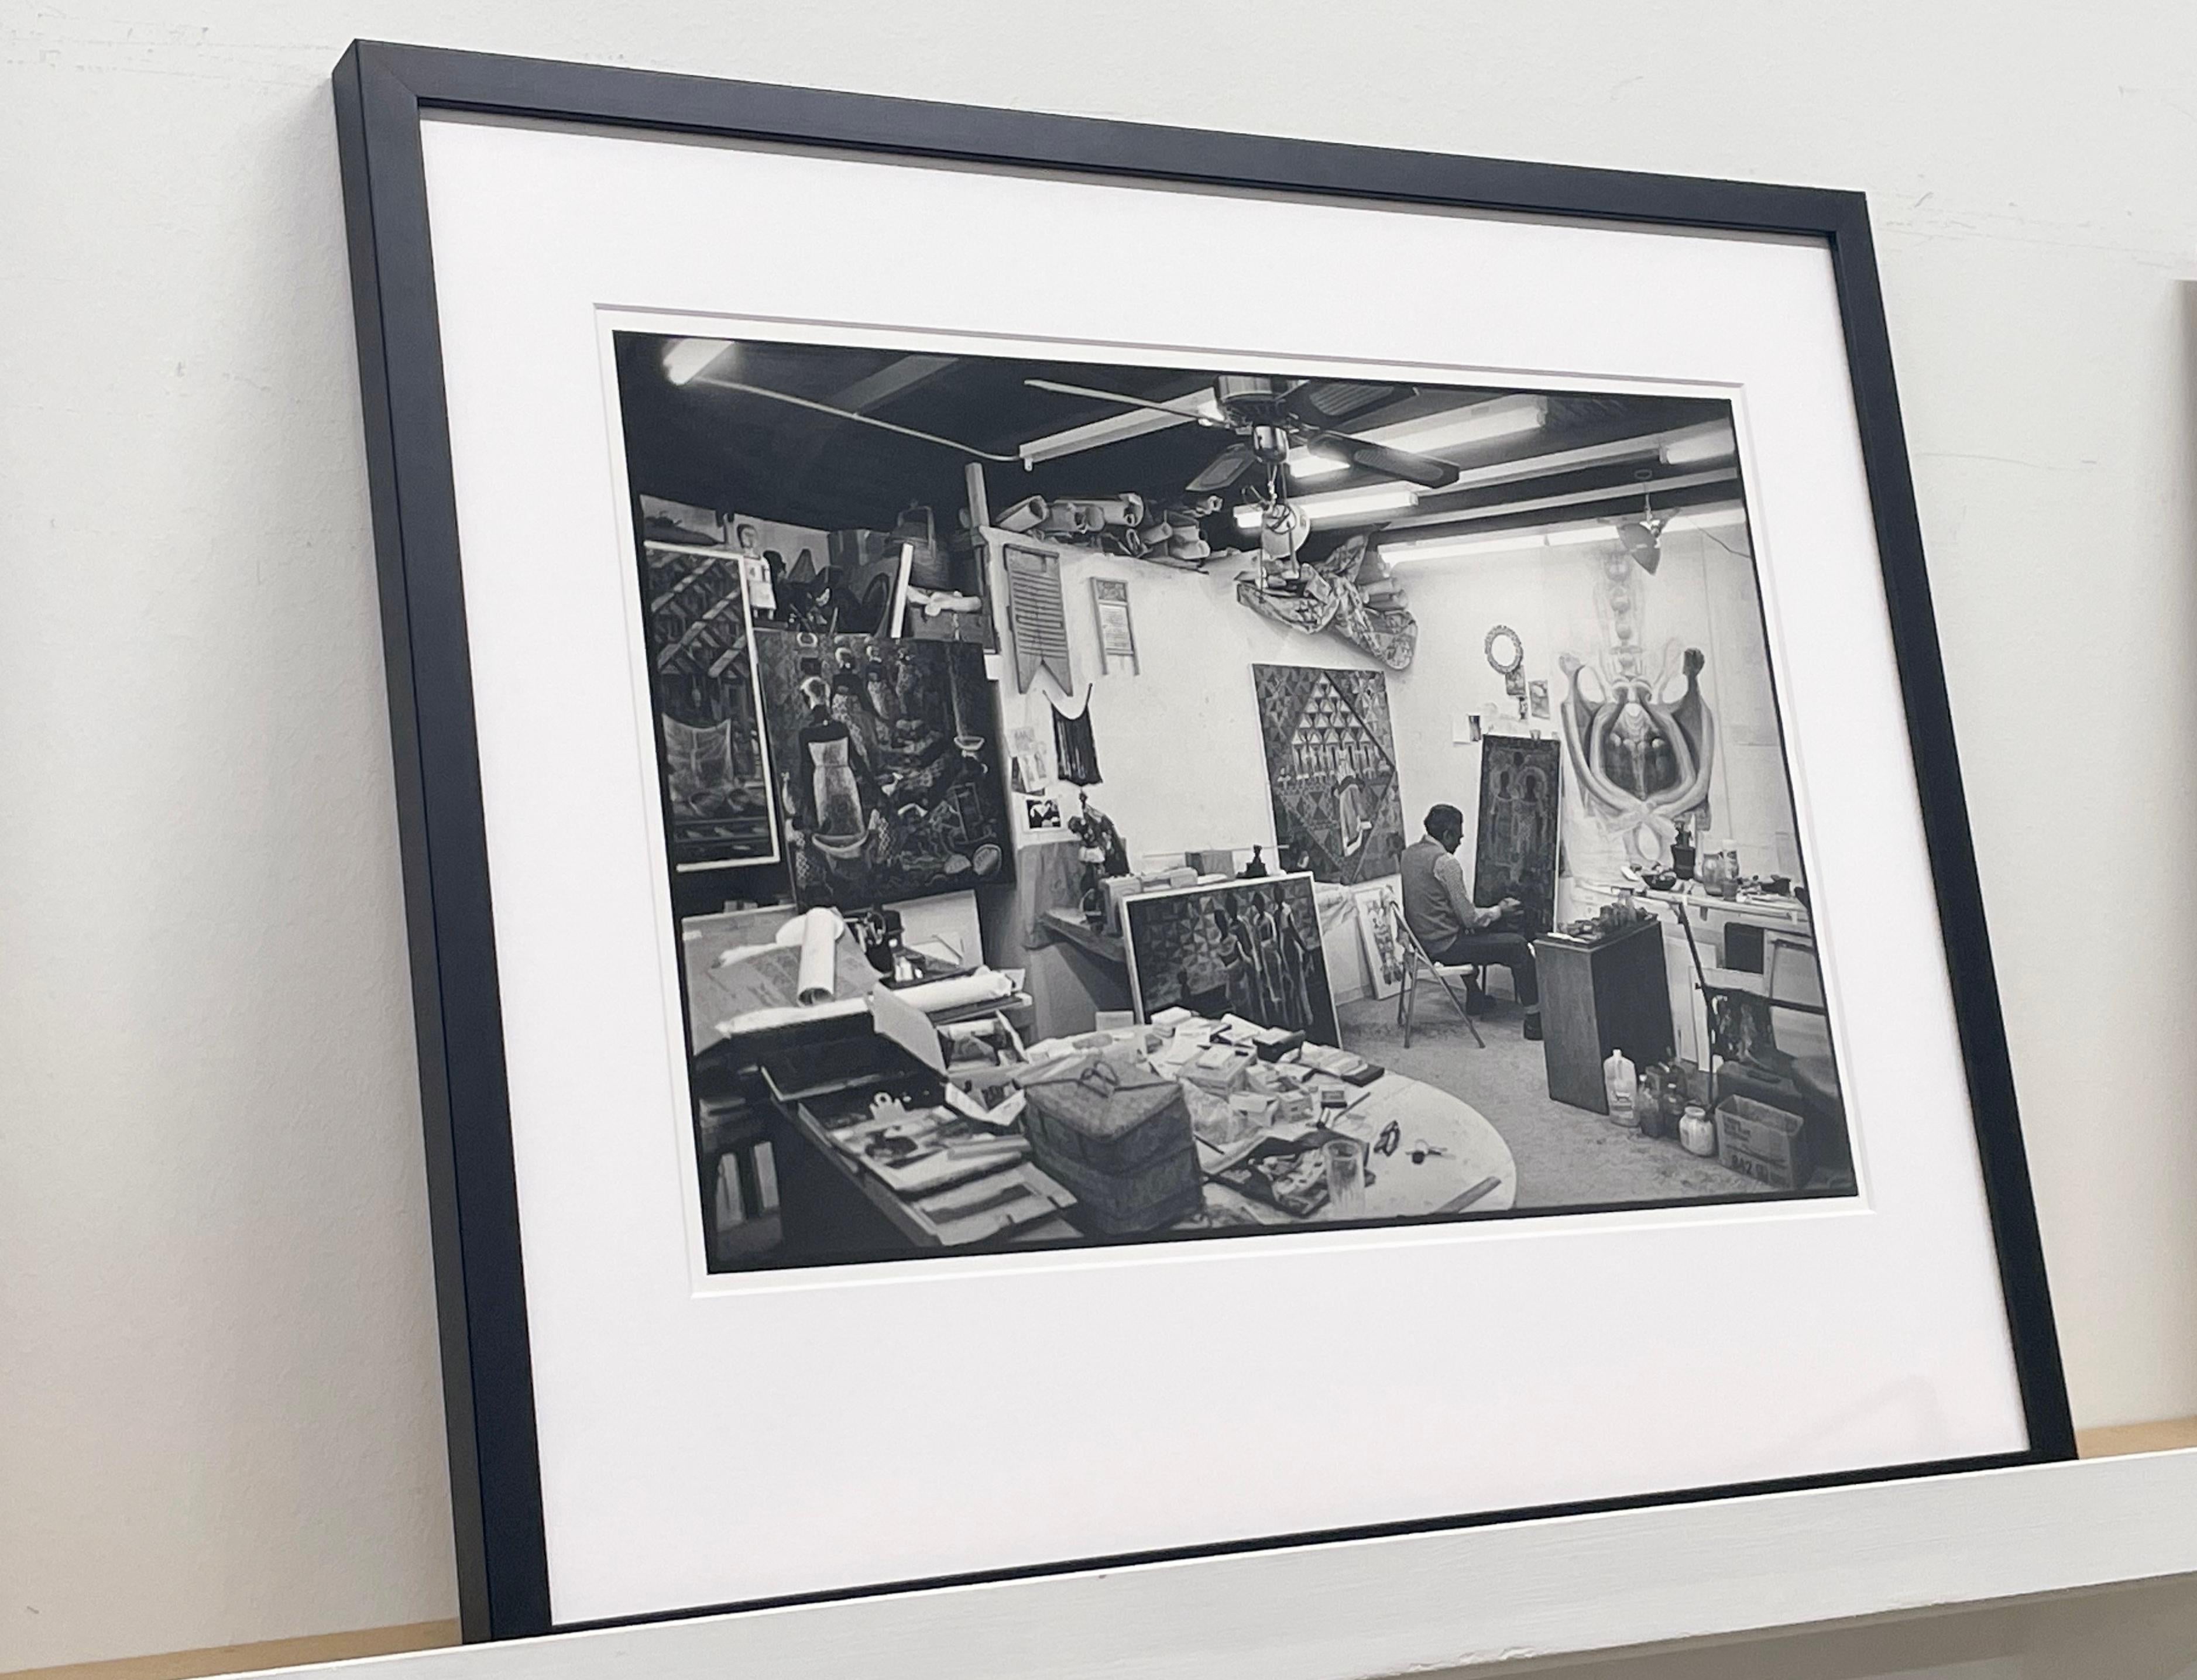 John Biggers dans son Studio par Earlie JR représente John Biggers en train de peindre dans son studio d'art, entouré de tableaux et de fournitures artistiques. 

Tirage gélatino-argentique
Format du papier : 20 x 16 pouces, Format de l'image :